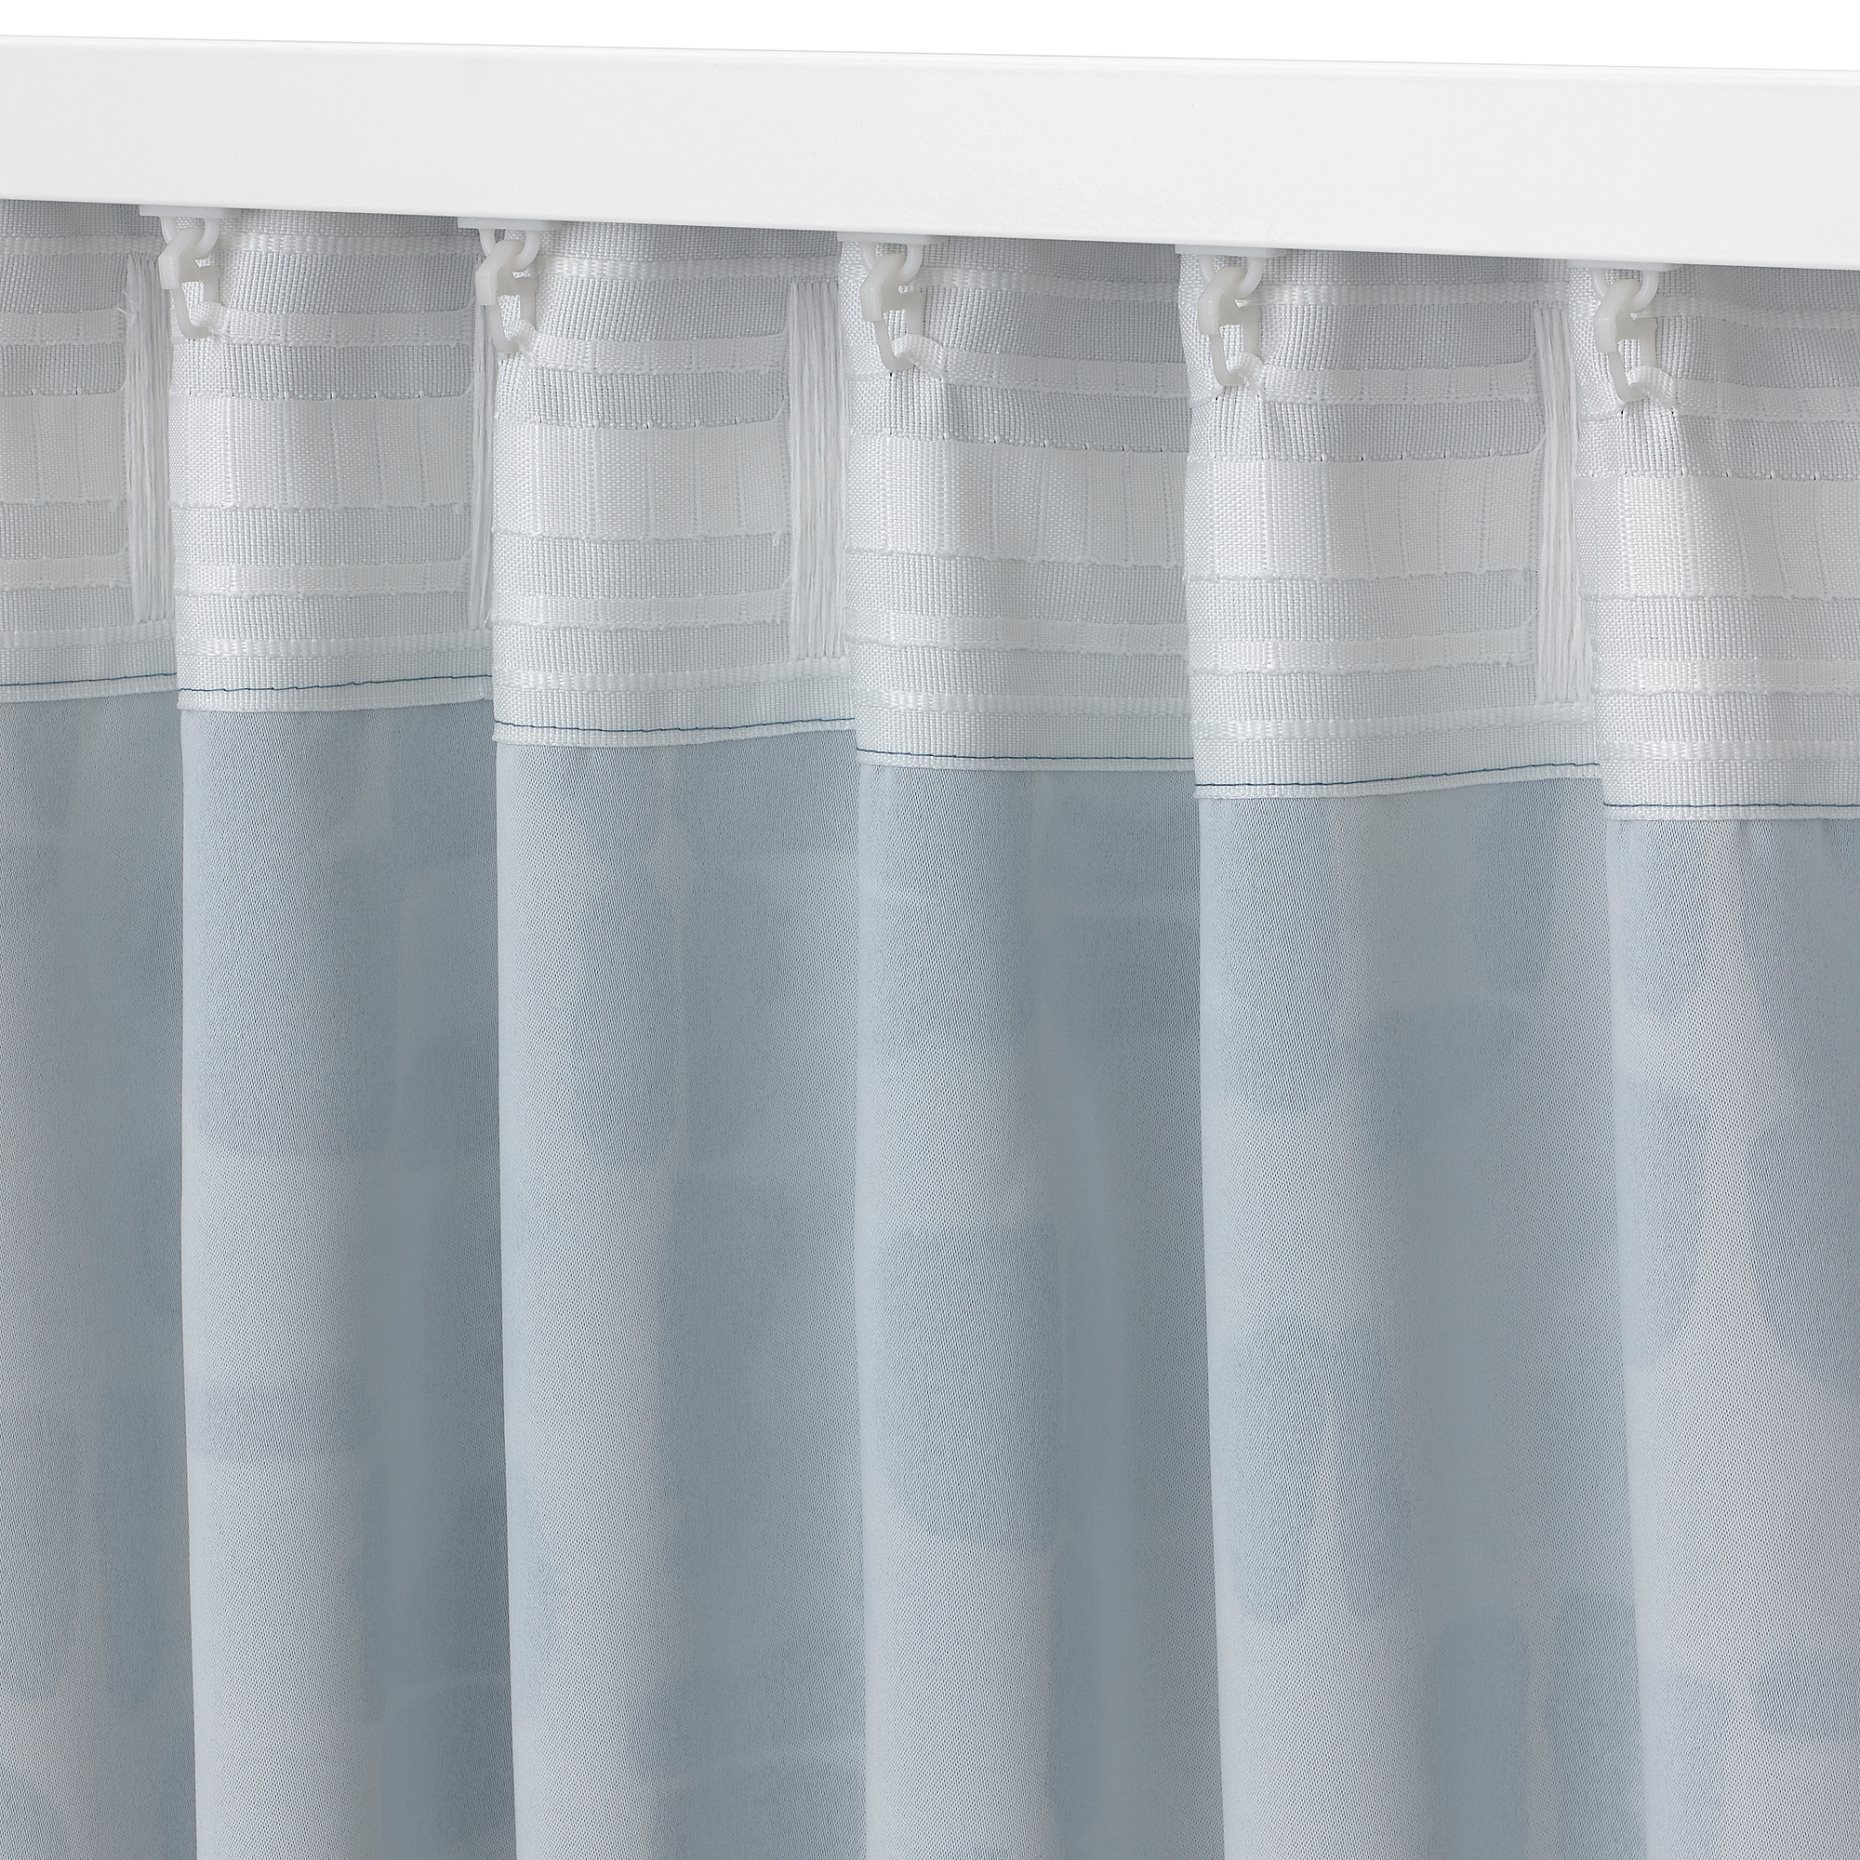 SPIRSTÅNDS, room darkening curtains 1 pair, 145x300 cm, 305.644.51